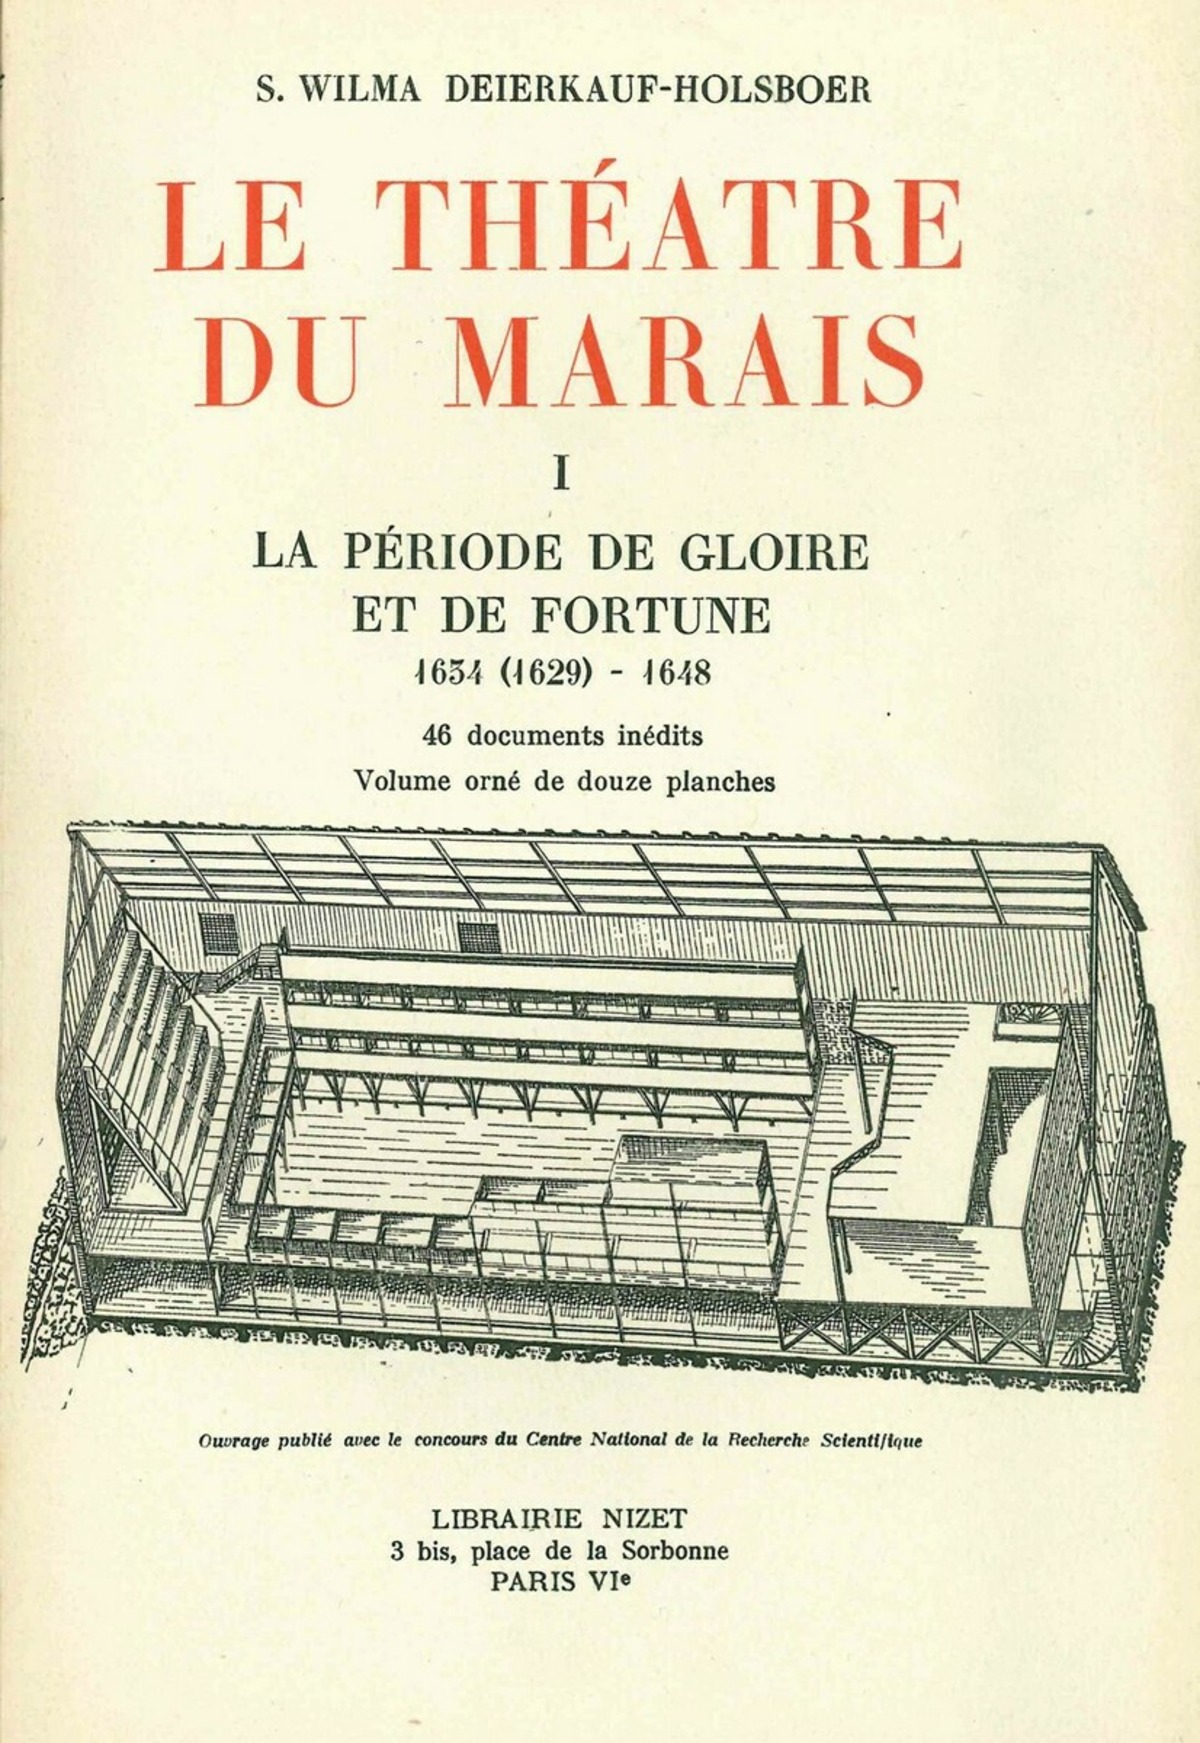 Le Théâtre du Marais, 2 vols